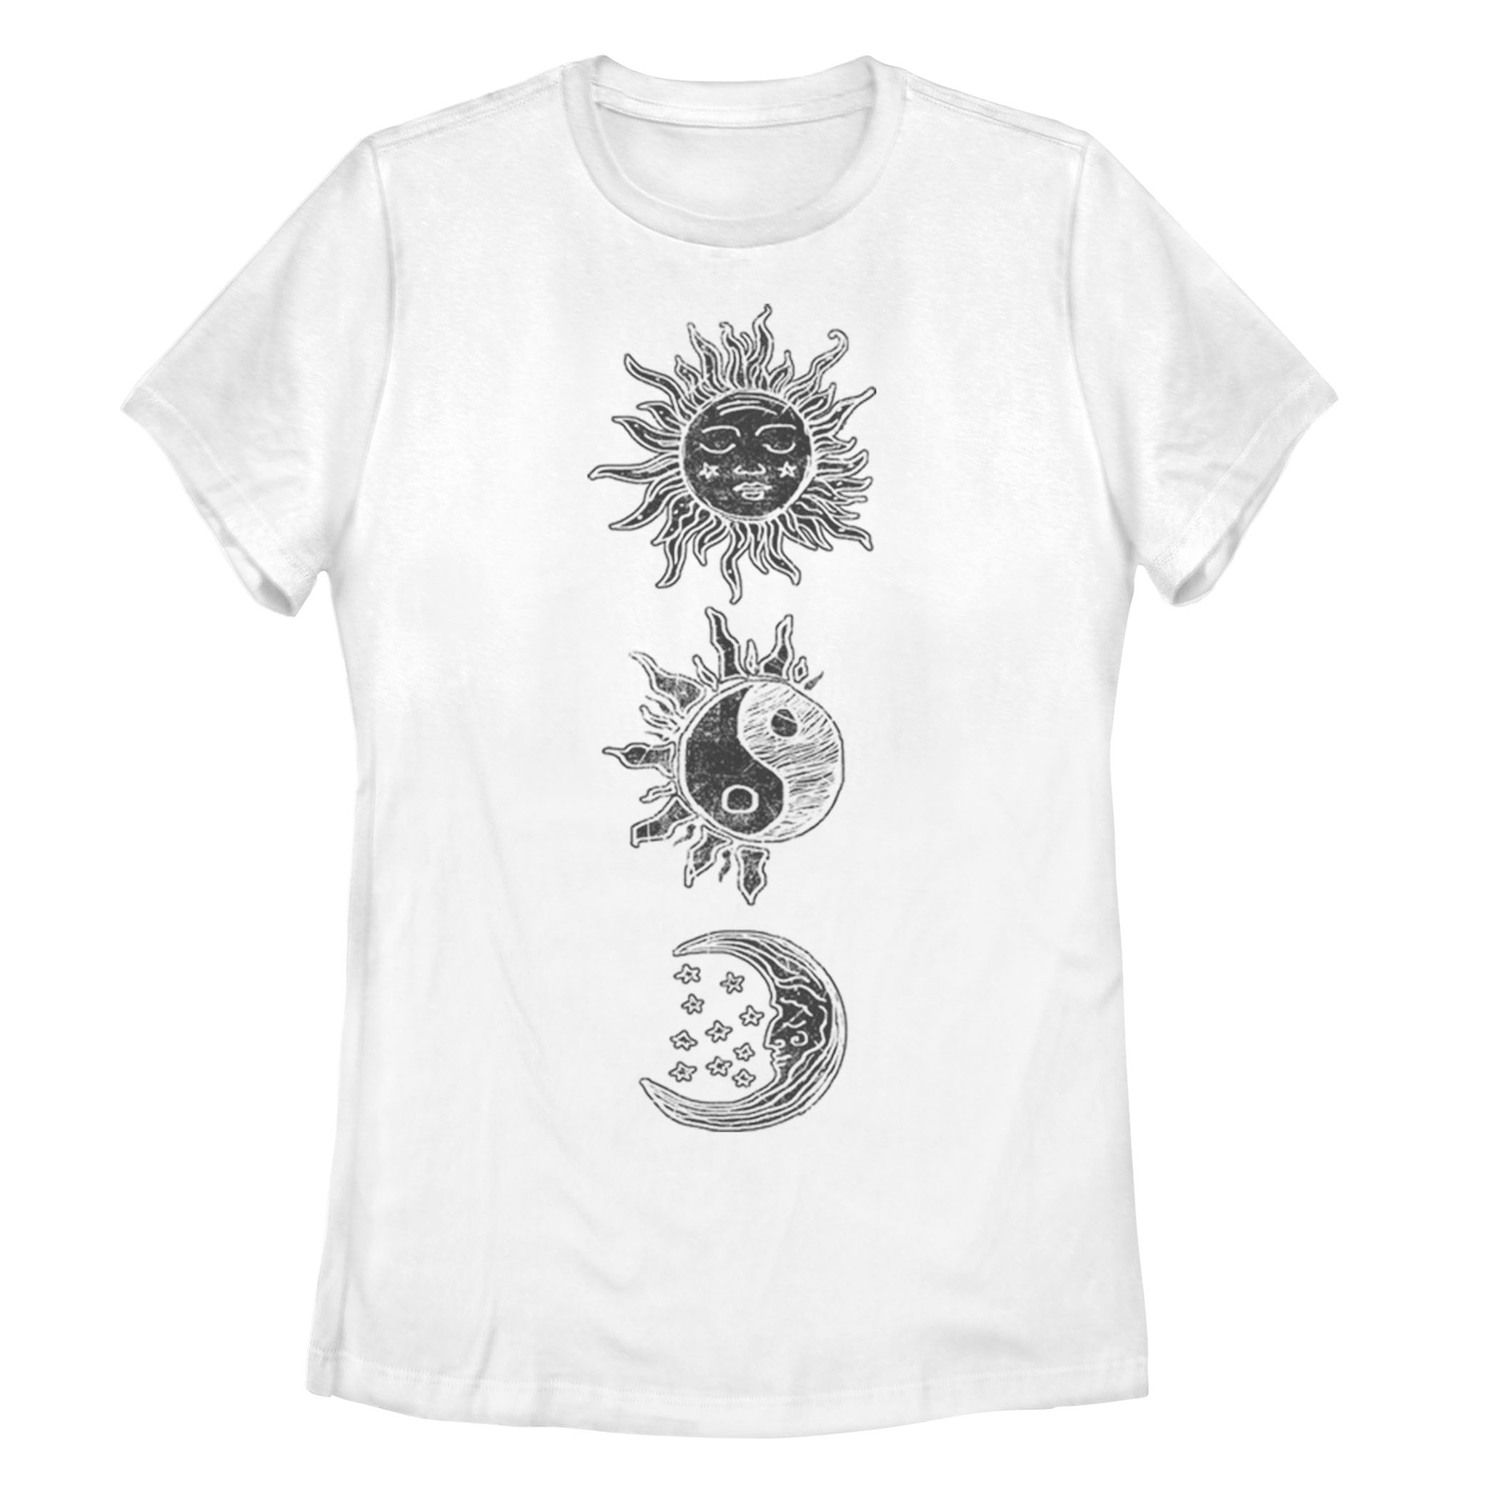 Детская футболка Sun Moon с гравюрой на дереве и галактическим рисунком, белый